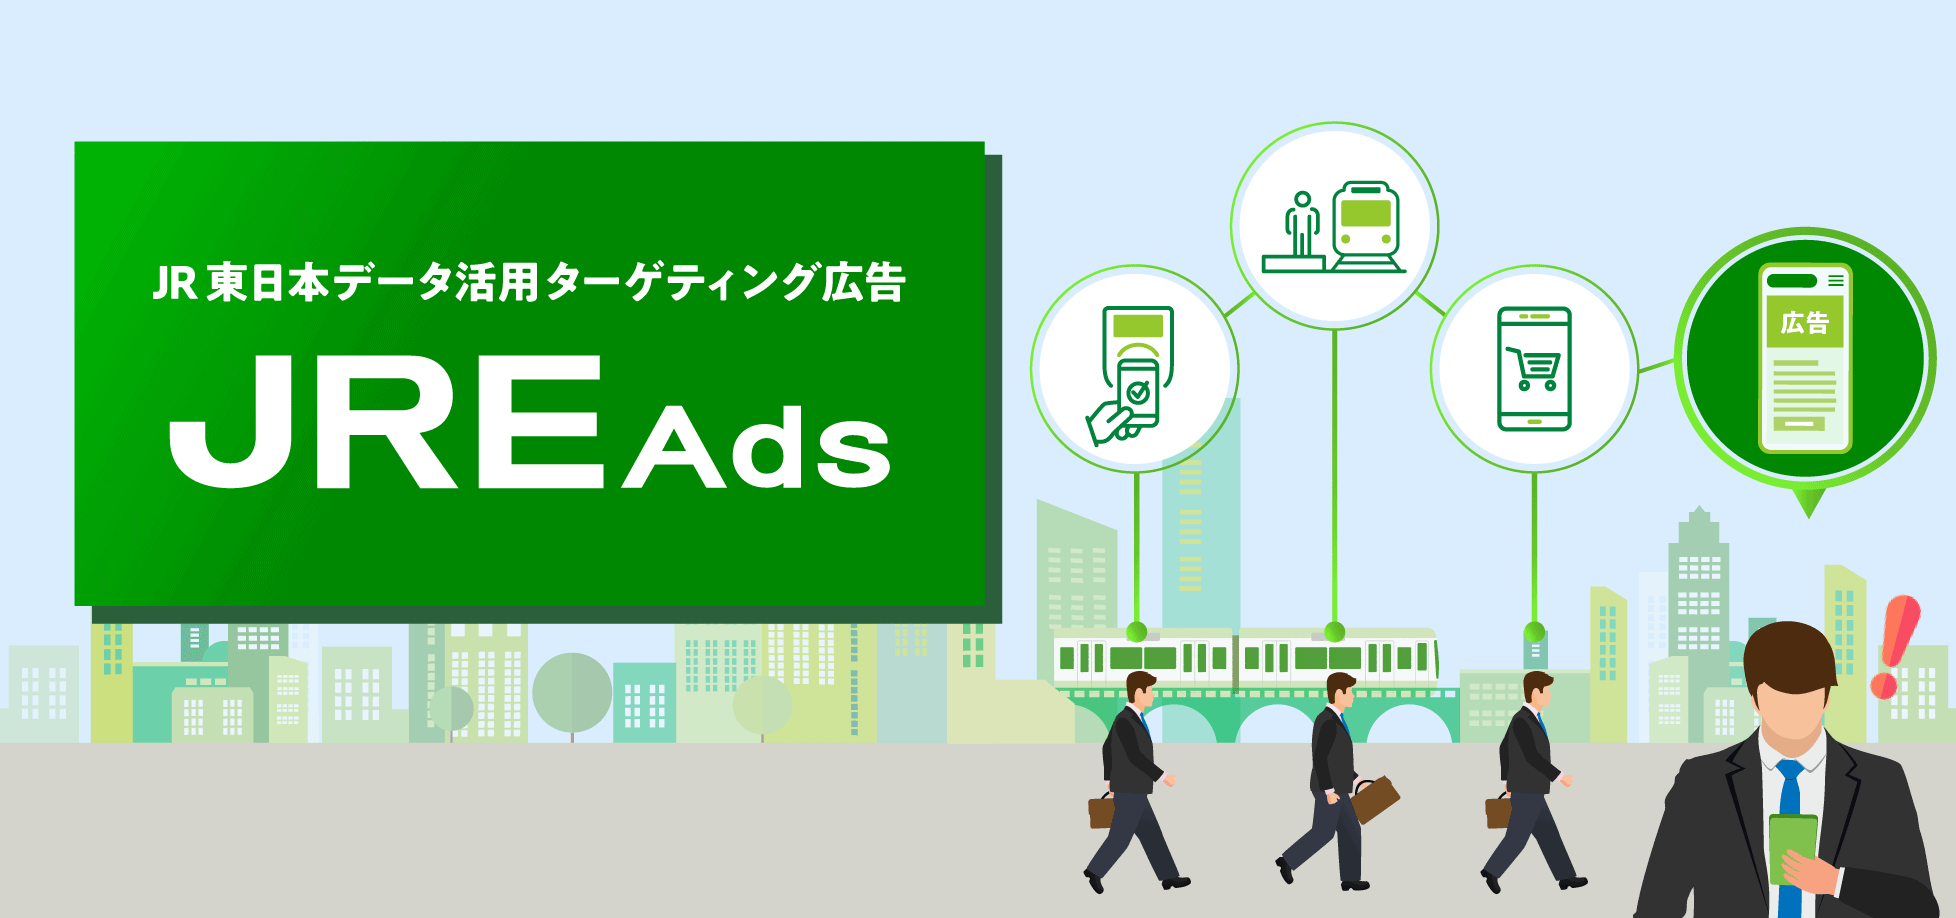 “JR東日本データ活用 ターゲティング広告 「JRE Ads」